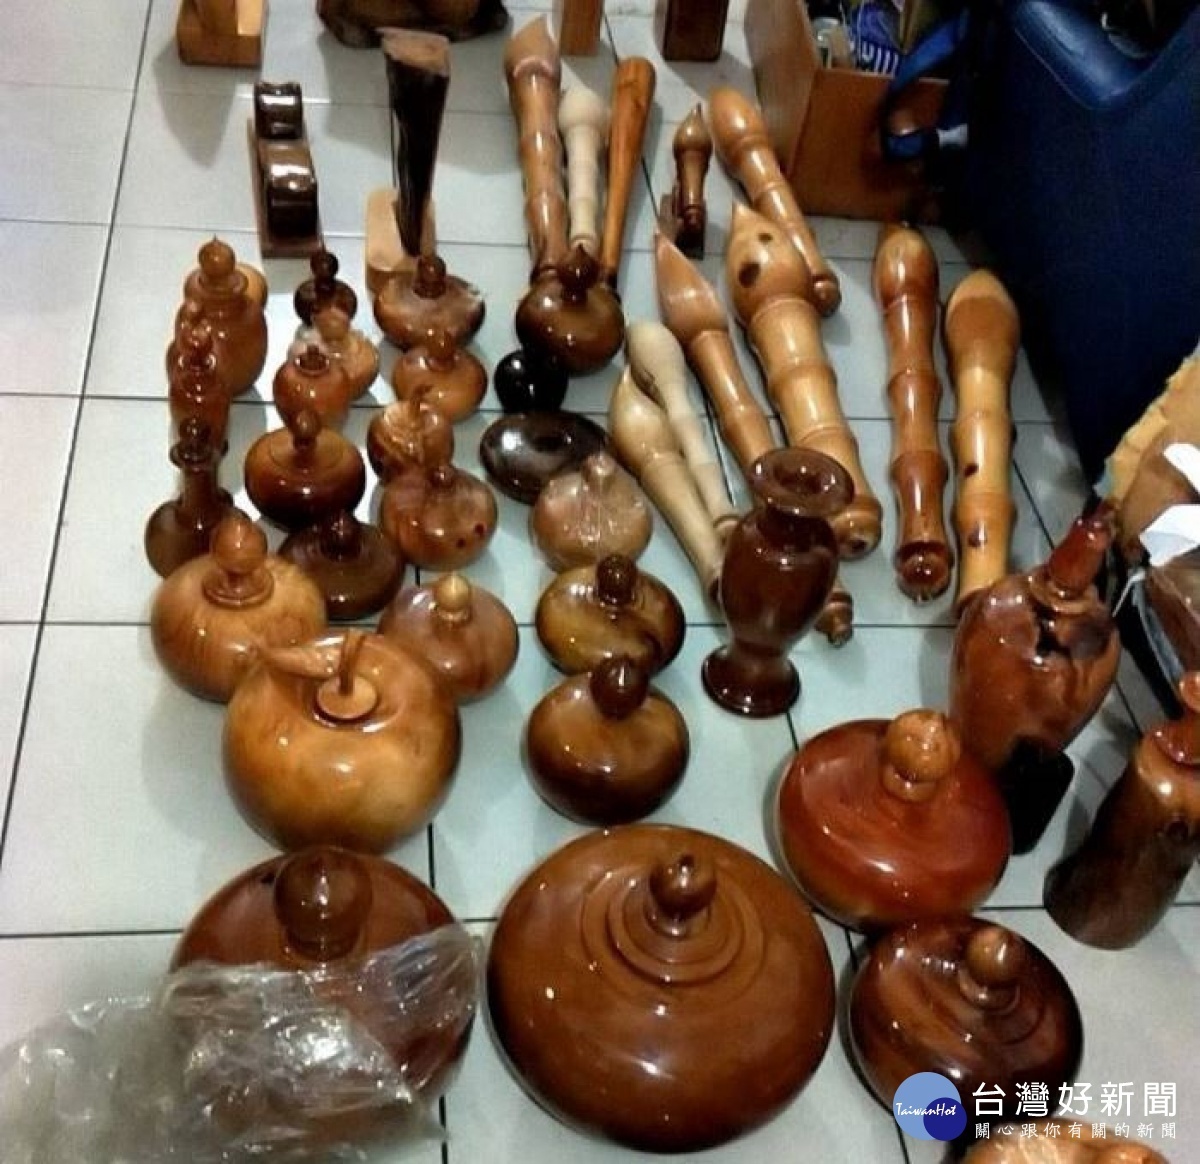 警方起獲大批檜木及肖楠、牛樟成品及半成品，其中不少已被製成手工藝品販售